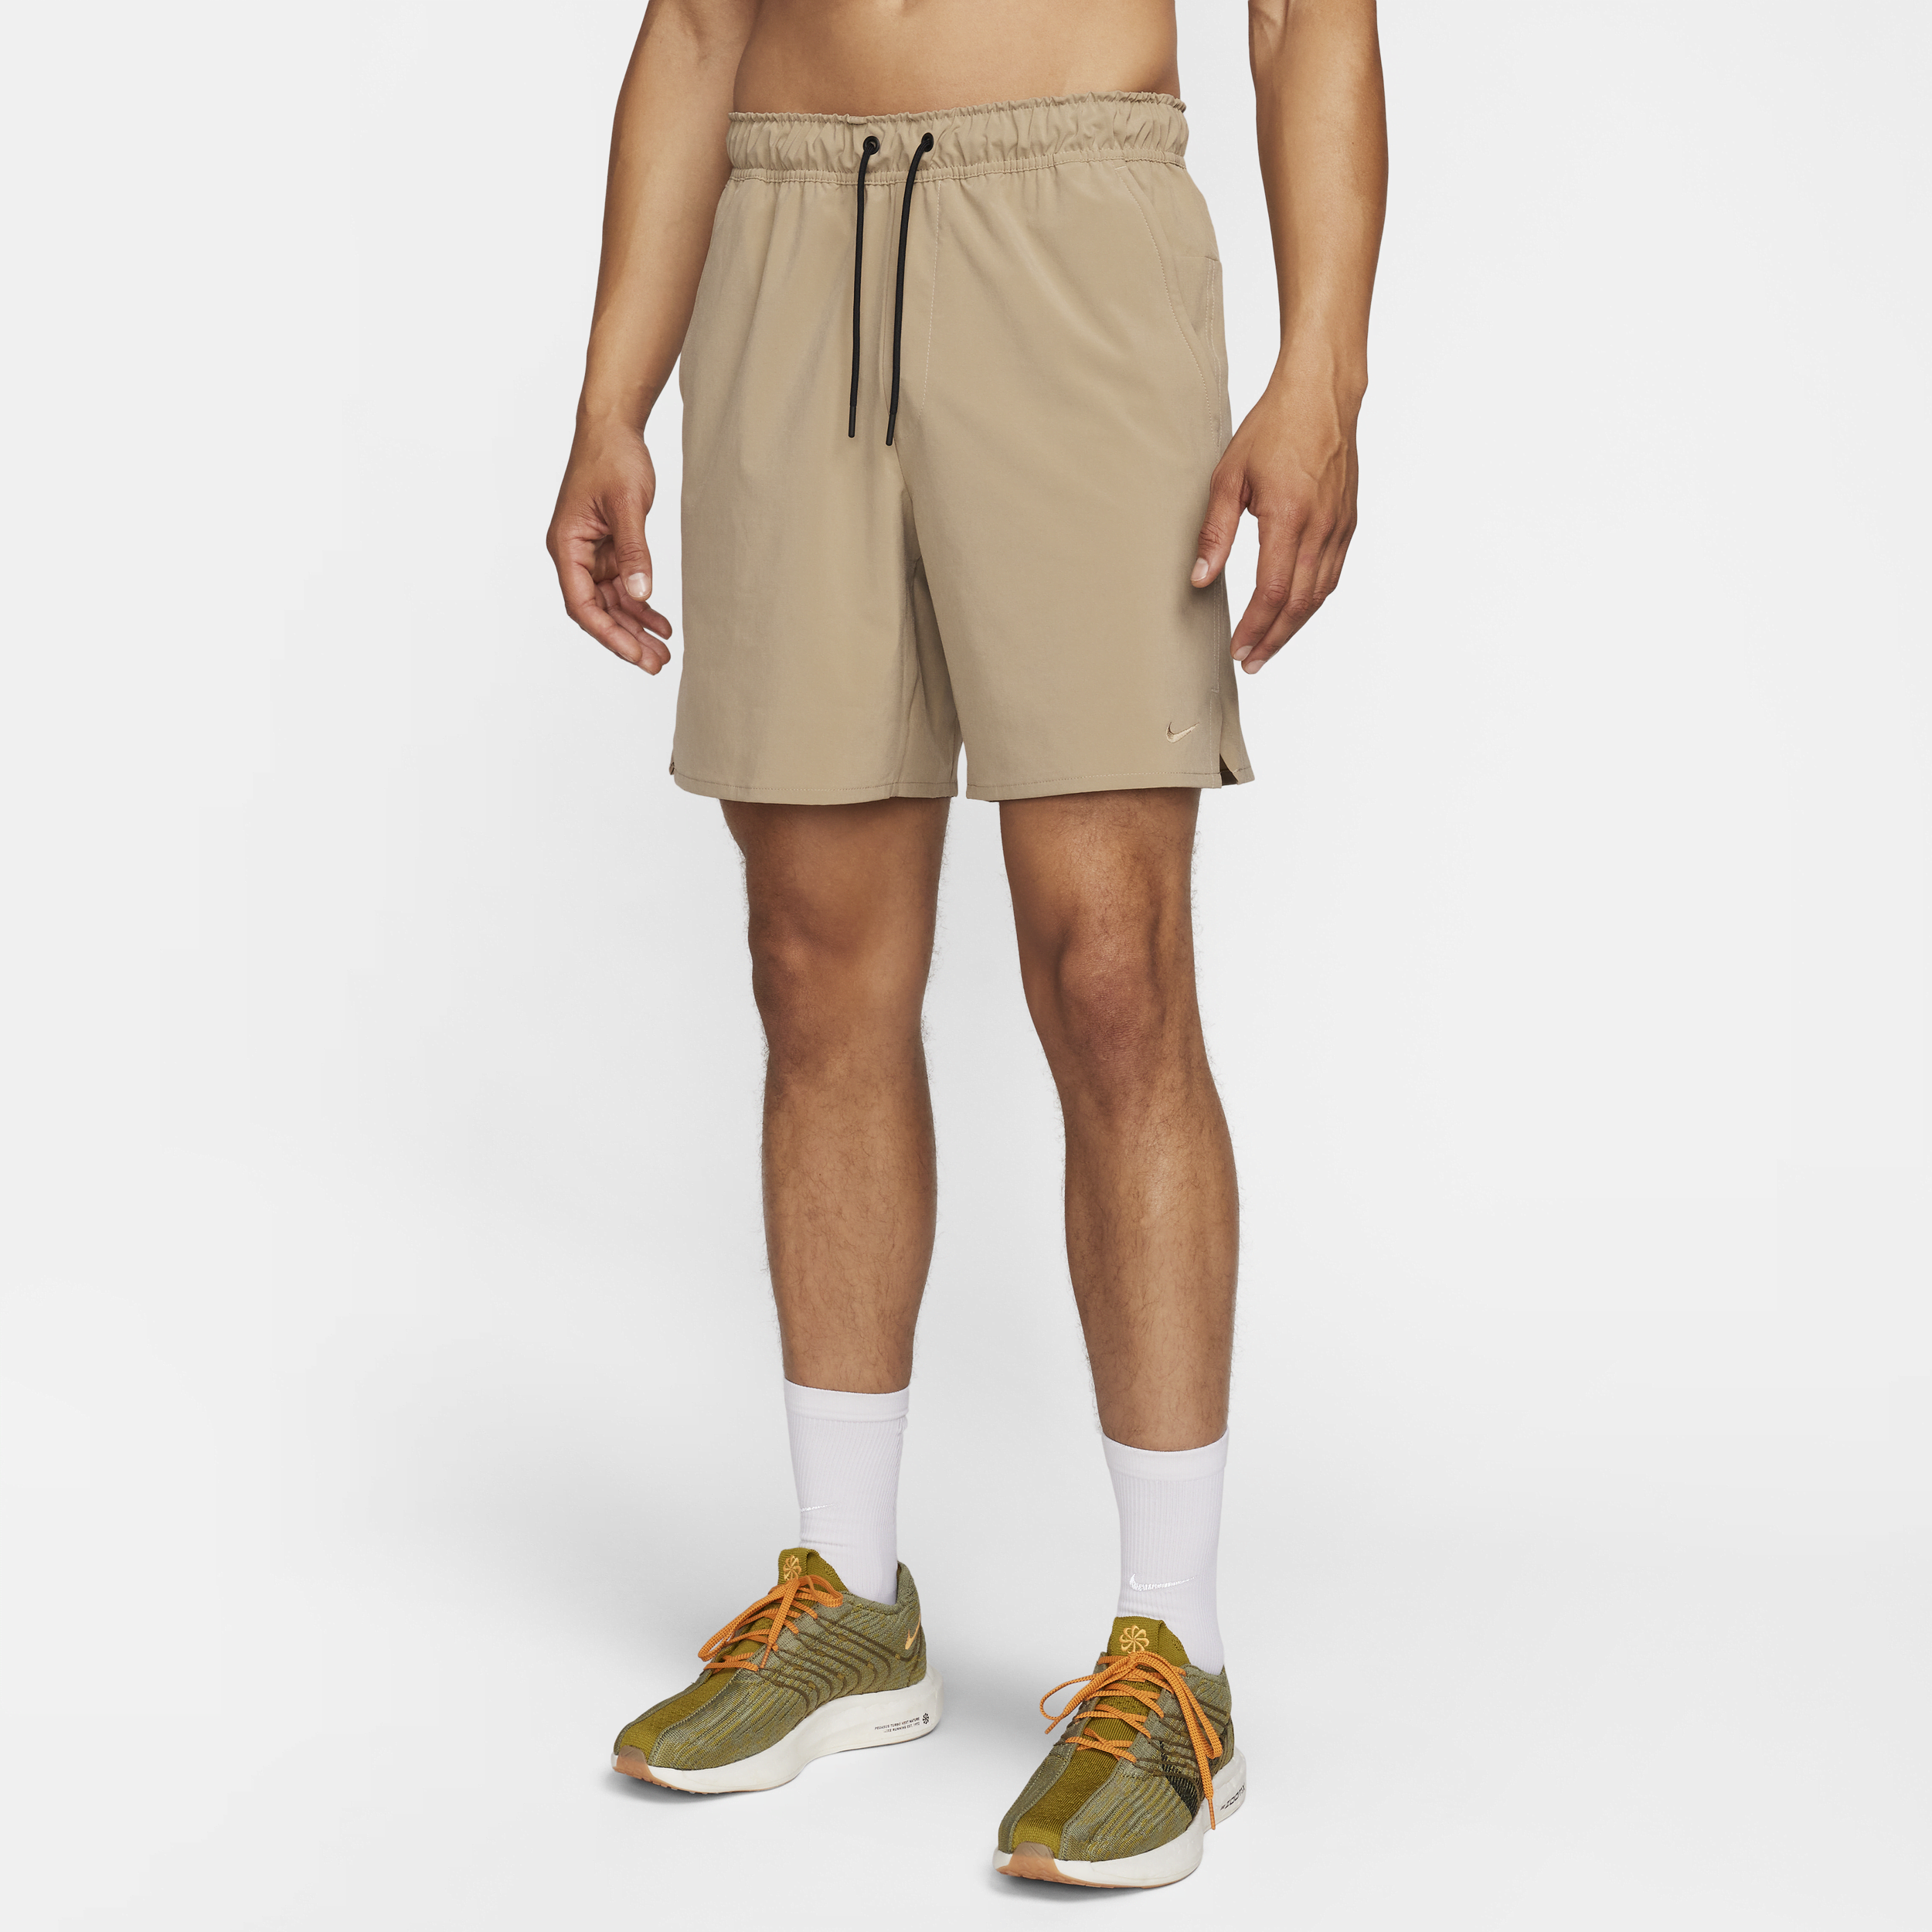 Shorts versatili Dri-FIT non foderati 18 cm Nike Unlimited – Uomo - Marrone